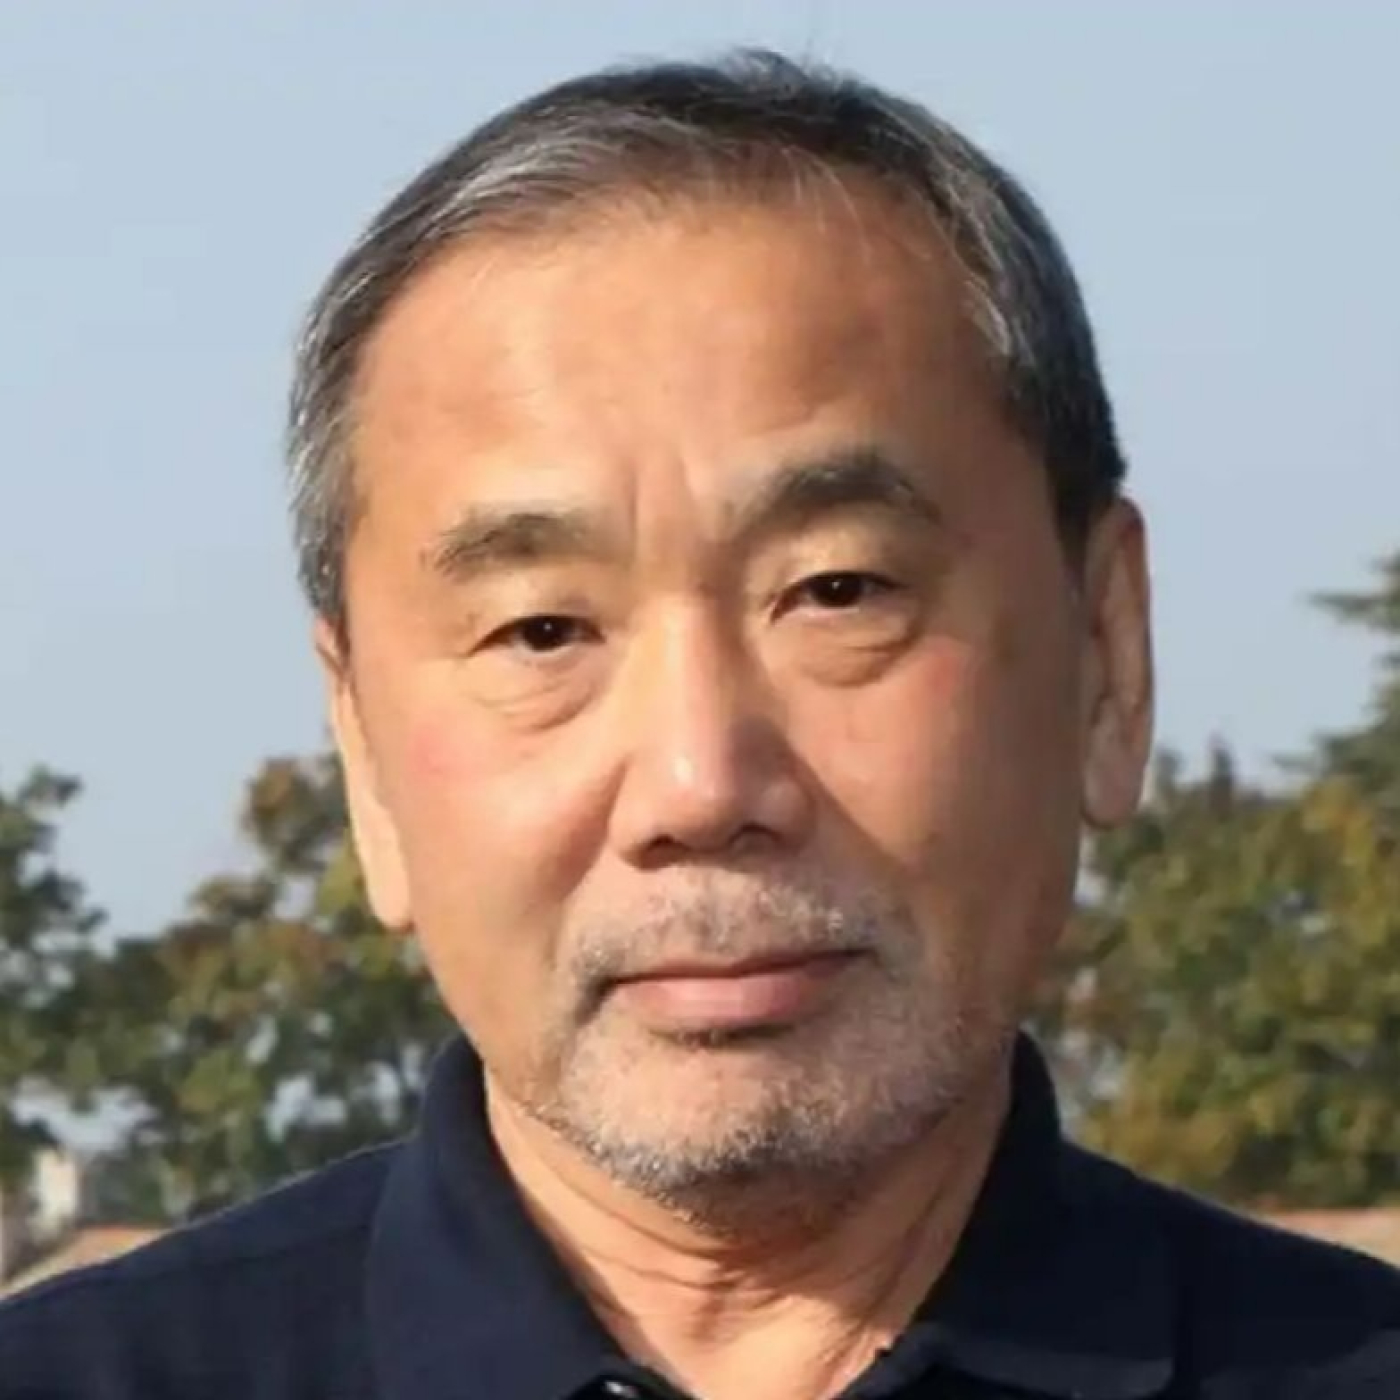 Murakami, Premio Princesa de Asturias de las Letras